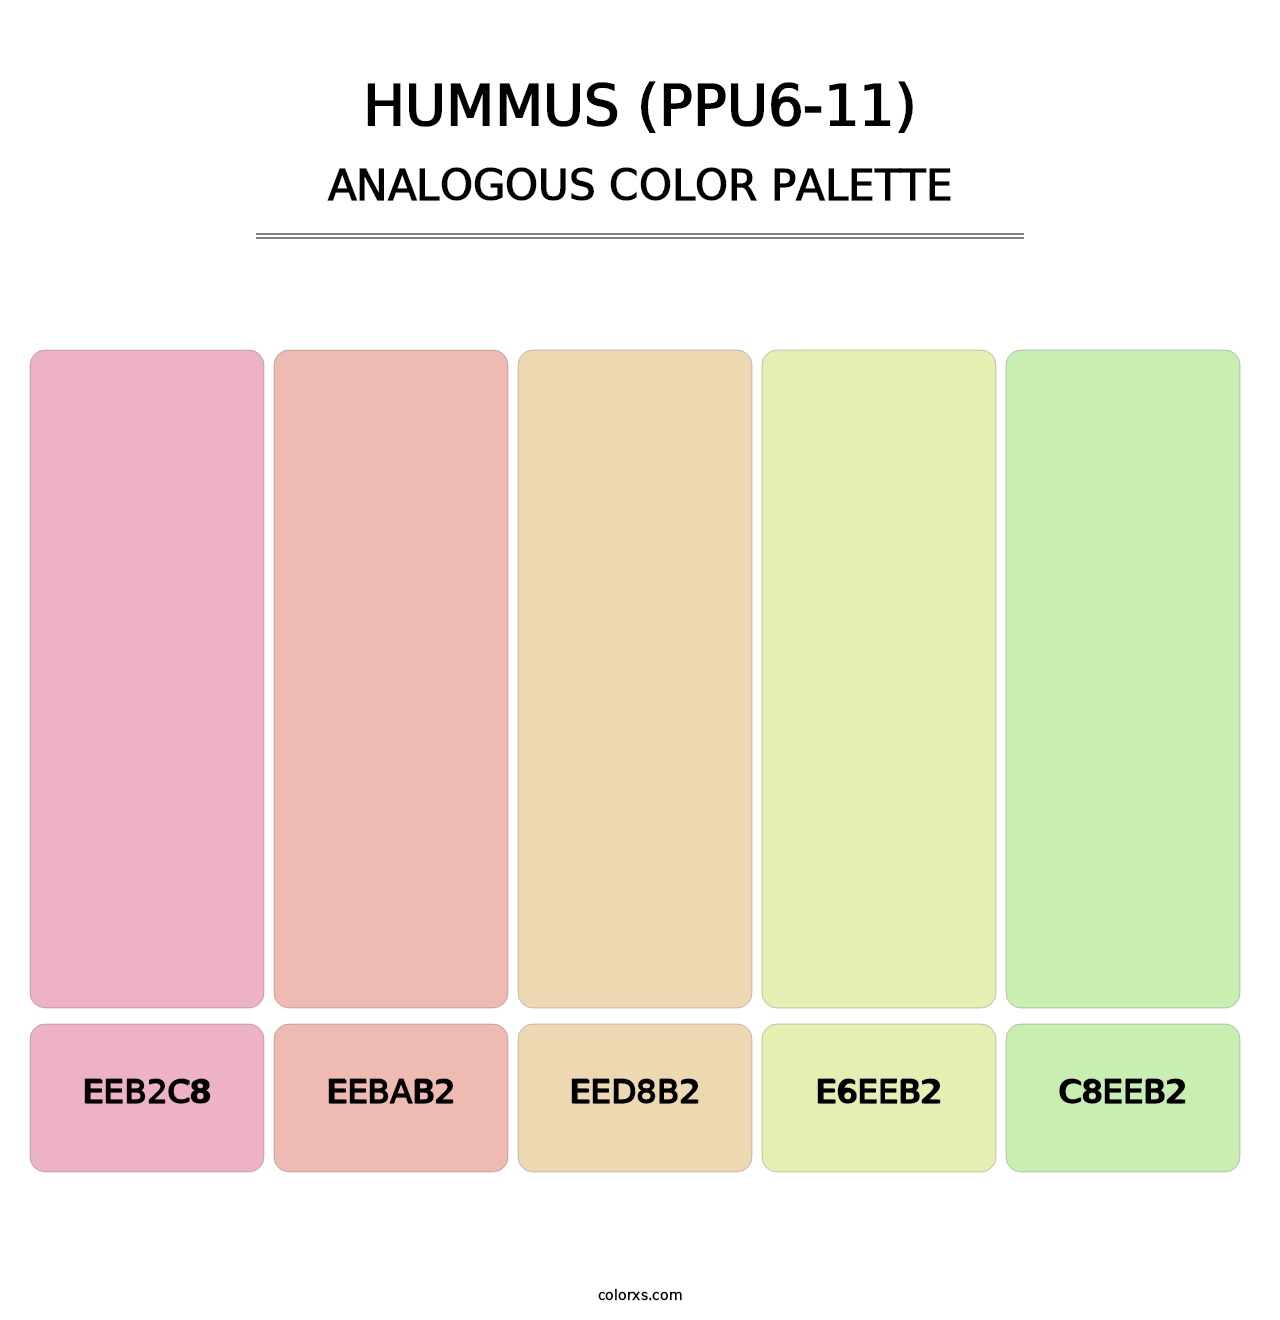 Hummus (PPU6-11) - Analogous Color Palette